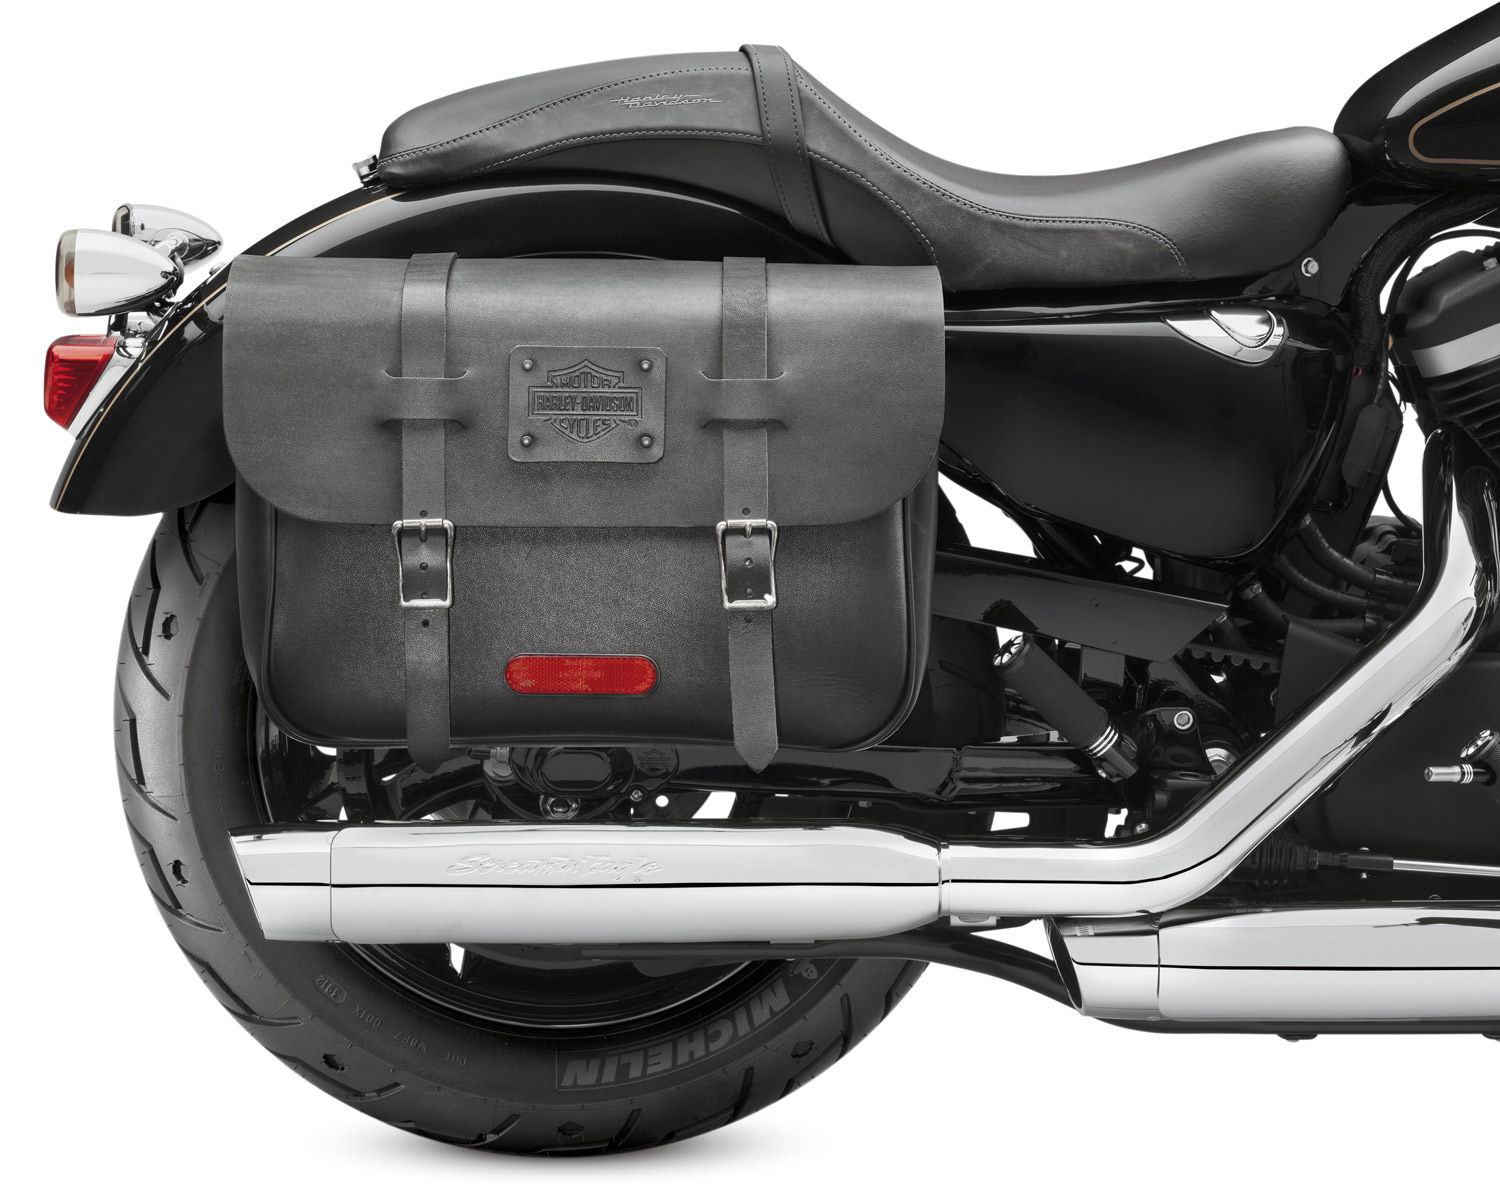 90201325 Express Rider Large Capacity Leather Saddlebags at Thunderbike ...